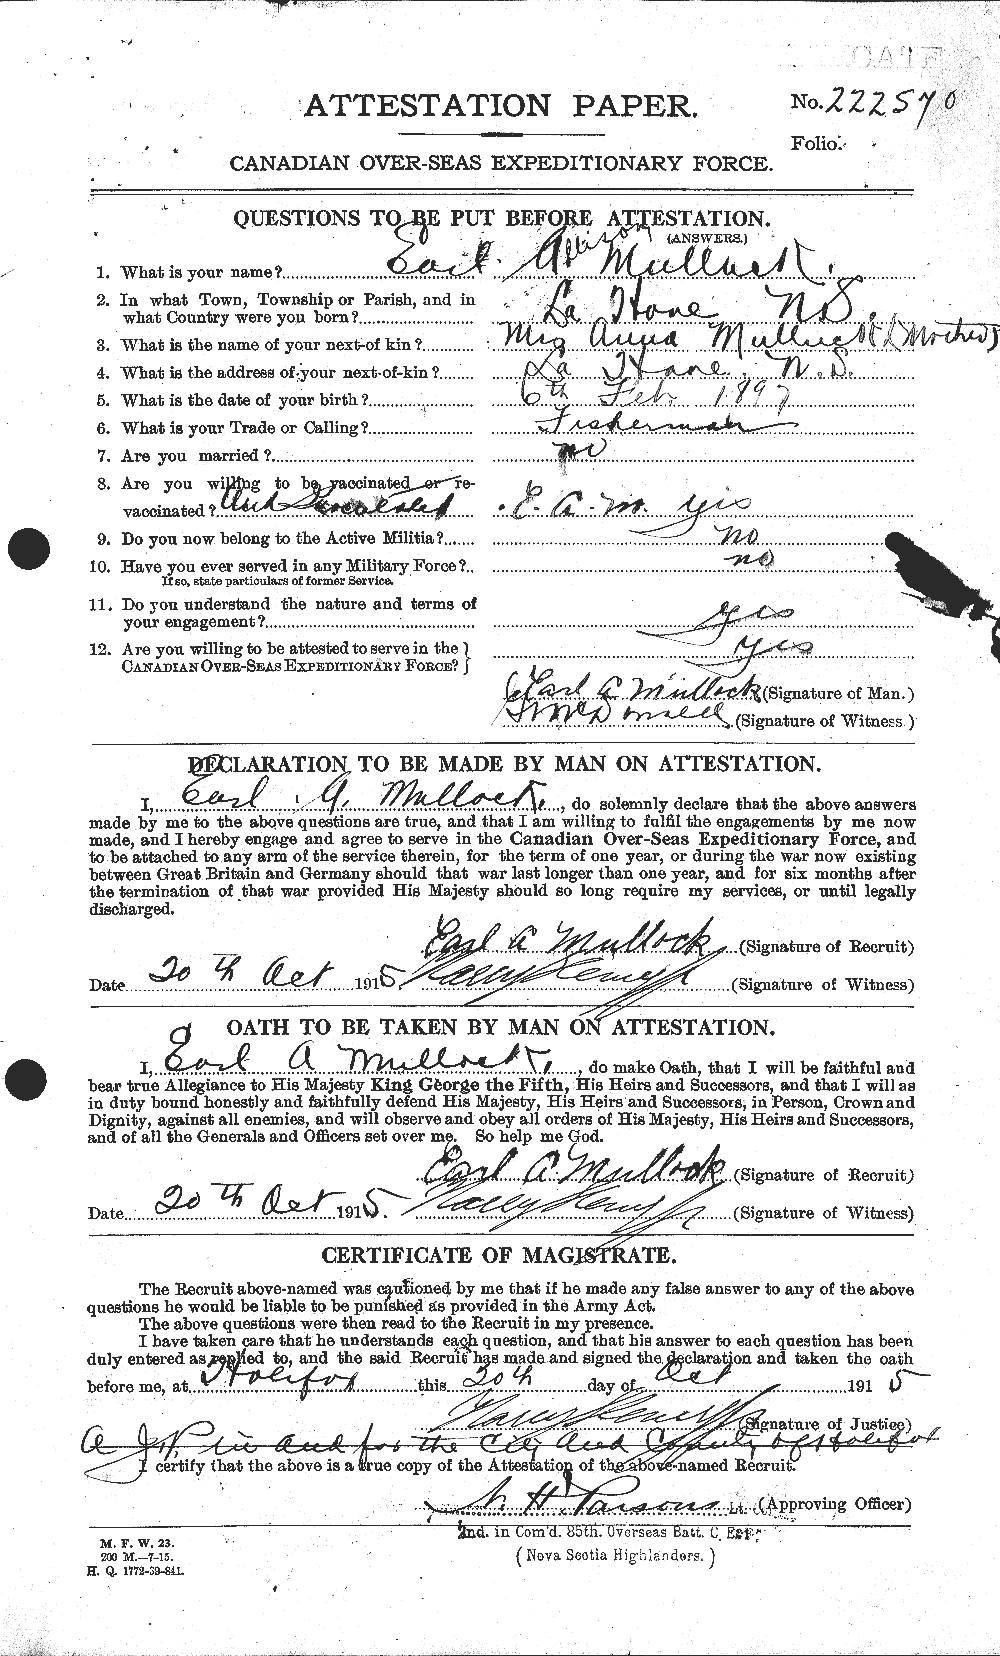 Dossiers du Personnel de la Première Guerre mondiale - CEC 513544a